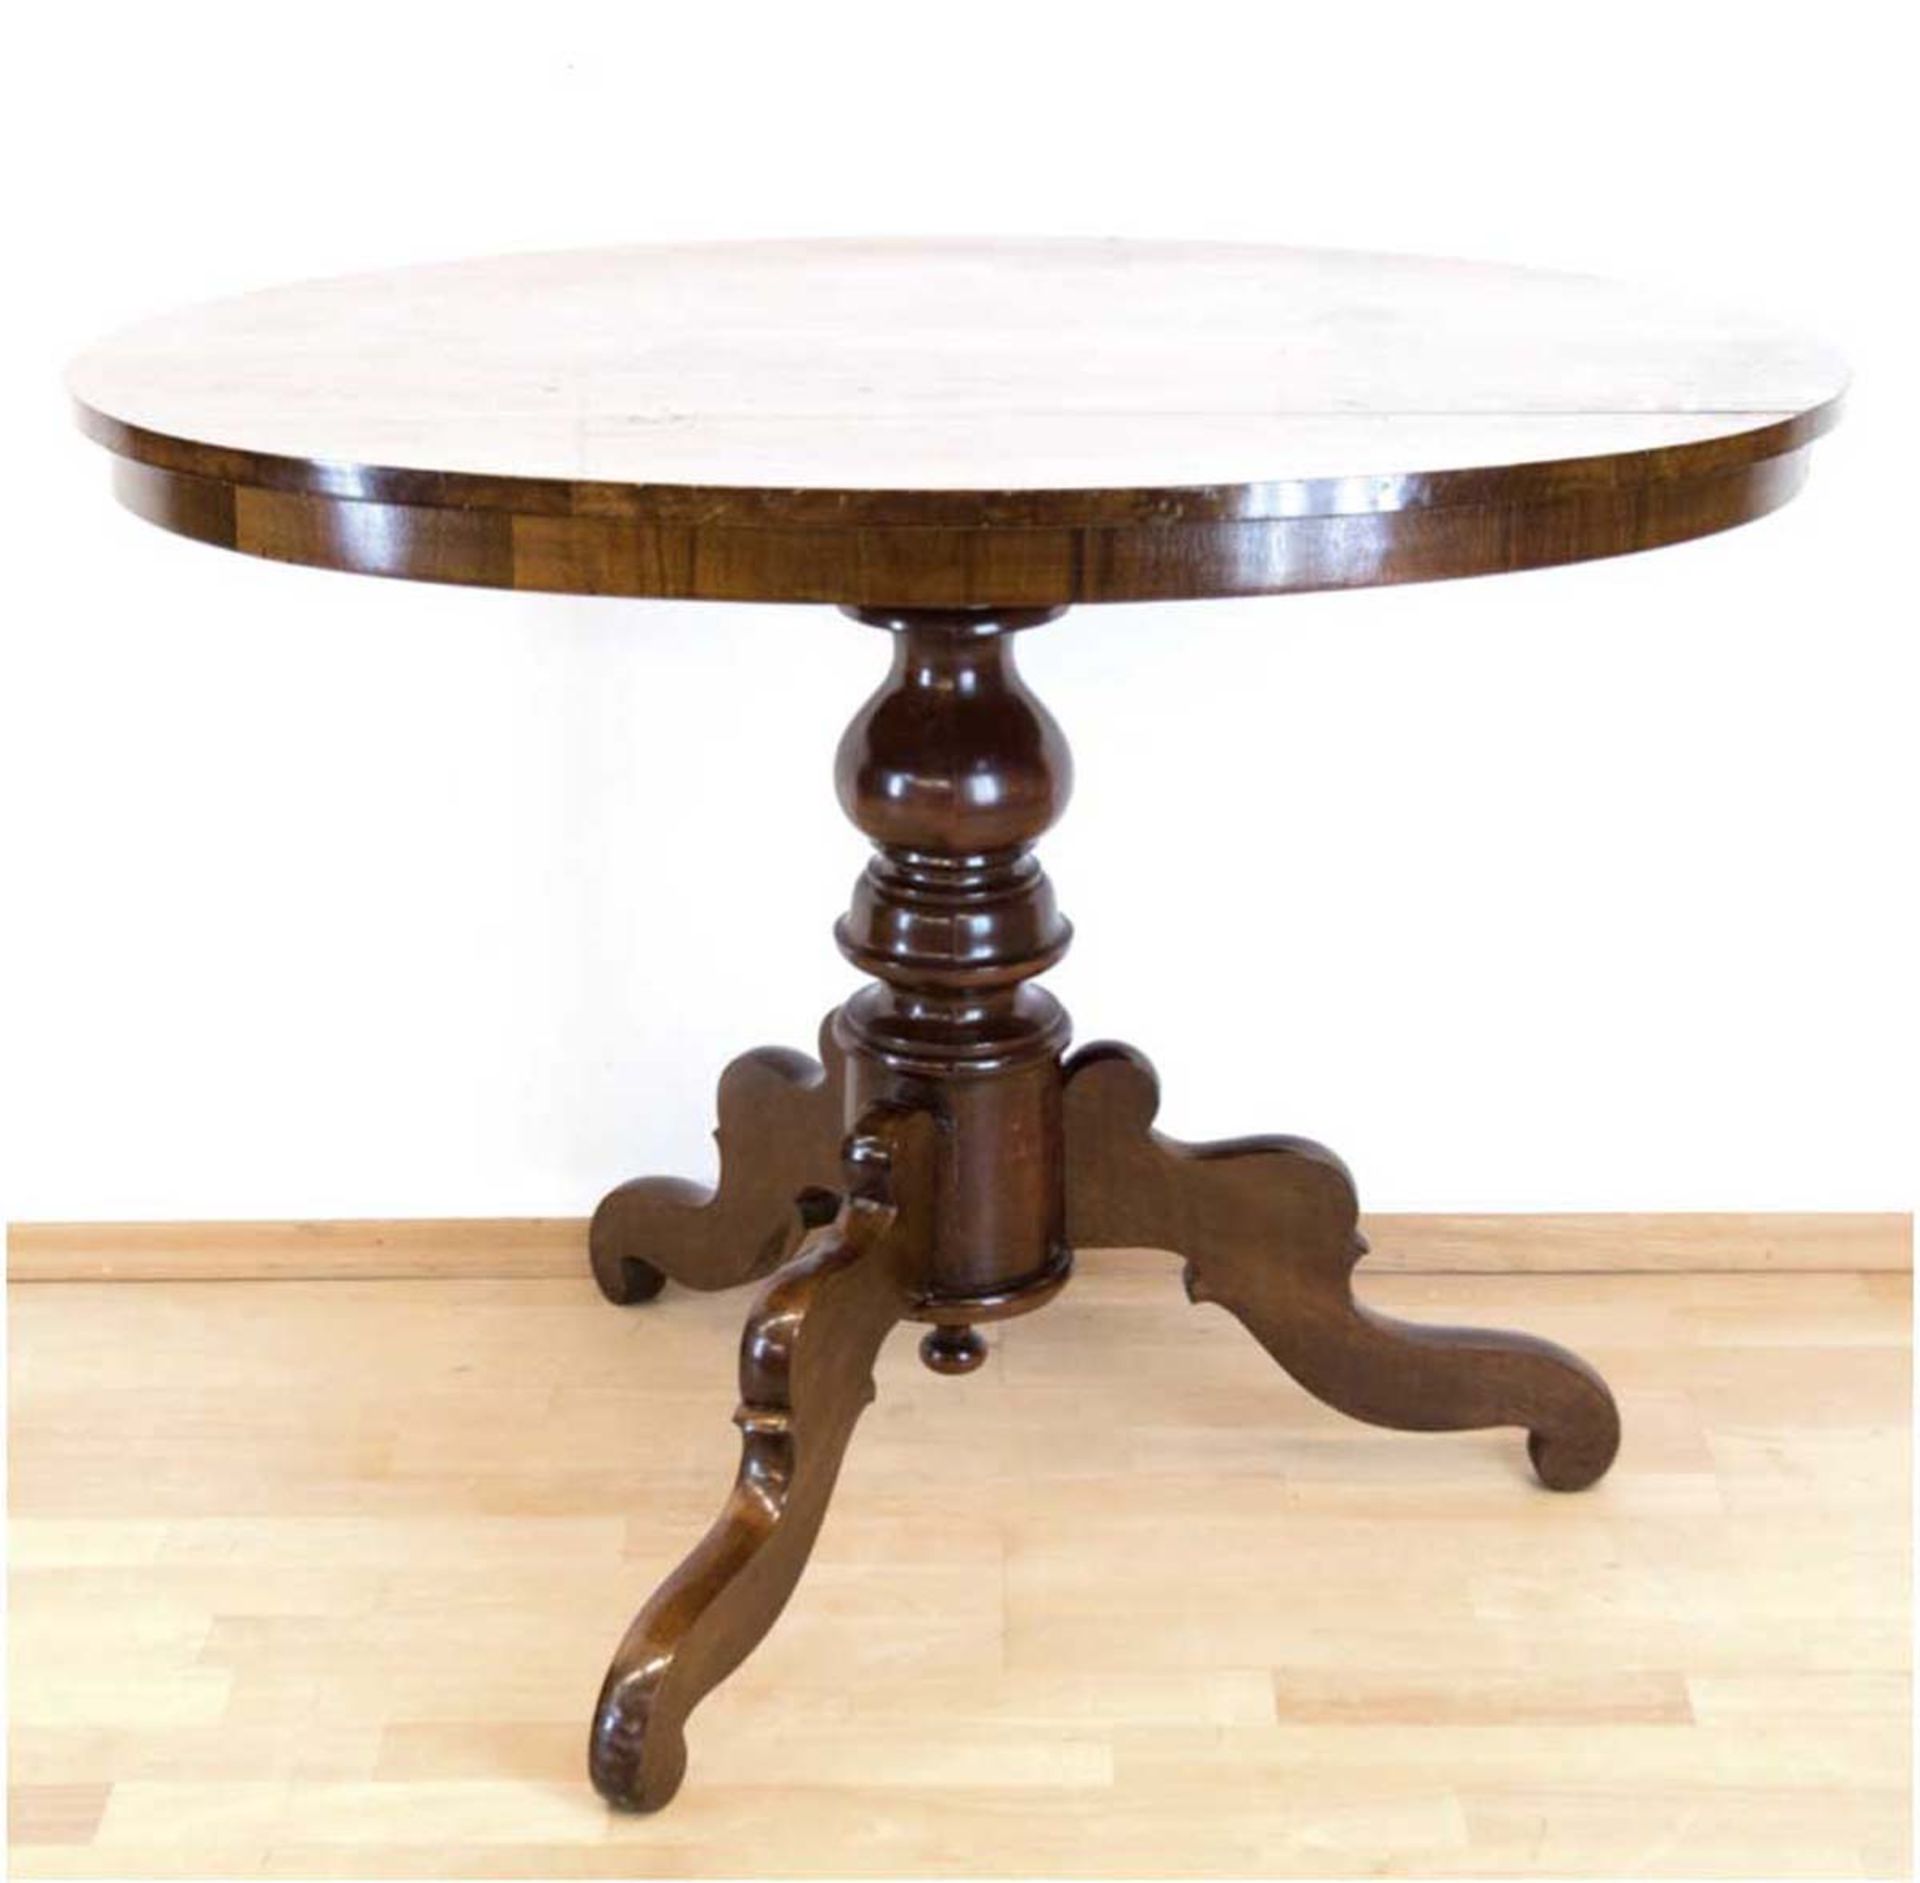 Biedermeier-Tisch, Mahagoni, gedrechseltes Füßgestell auf 3 Beinen, ovale Platte,Gebrauchspuren,